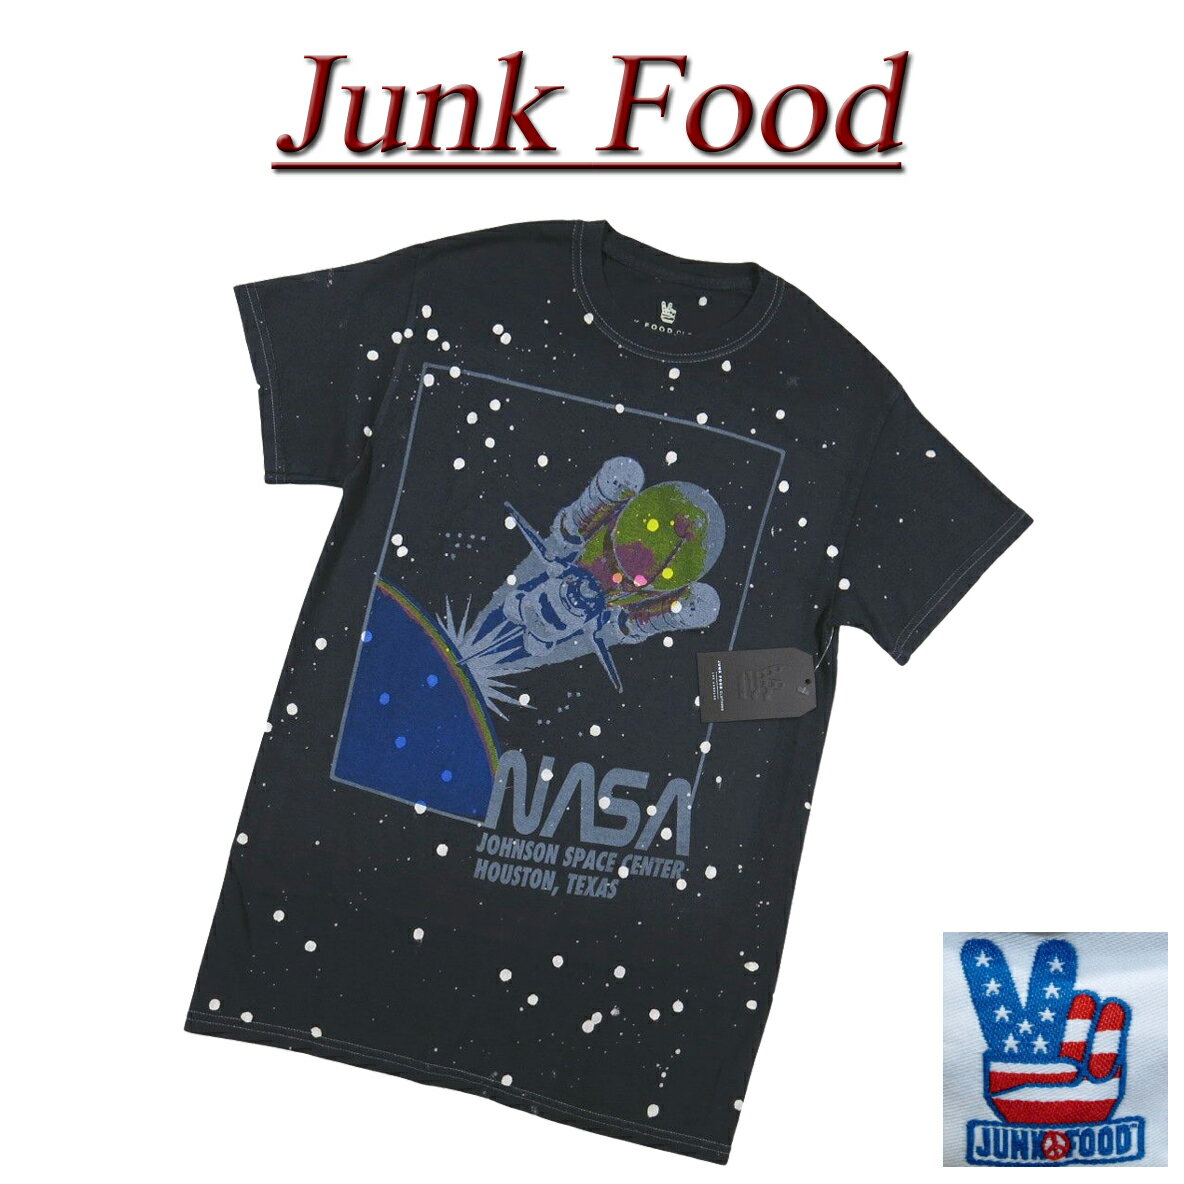  ac971 新品 JUNK FOOD ナサ スペースシャトル ビンテージ調 半袖 Tシャツ 12UXNAS0010 メンズ ジャンクフード NASA SPACE SHUTTLE ティーシャツ JunkFood 